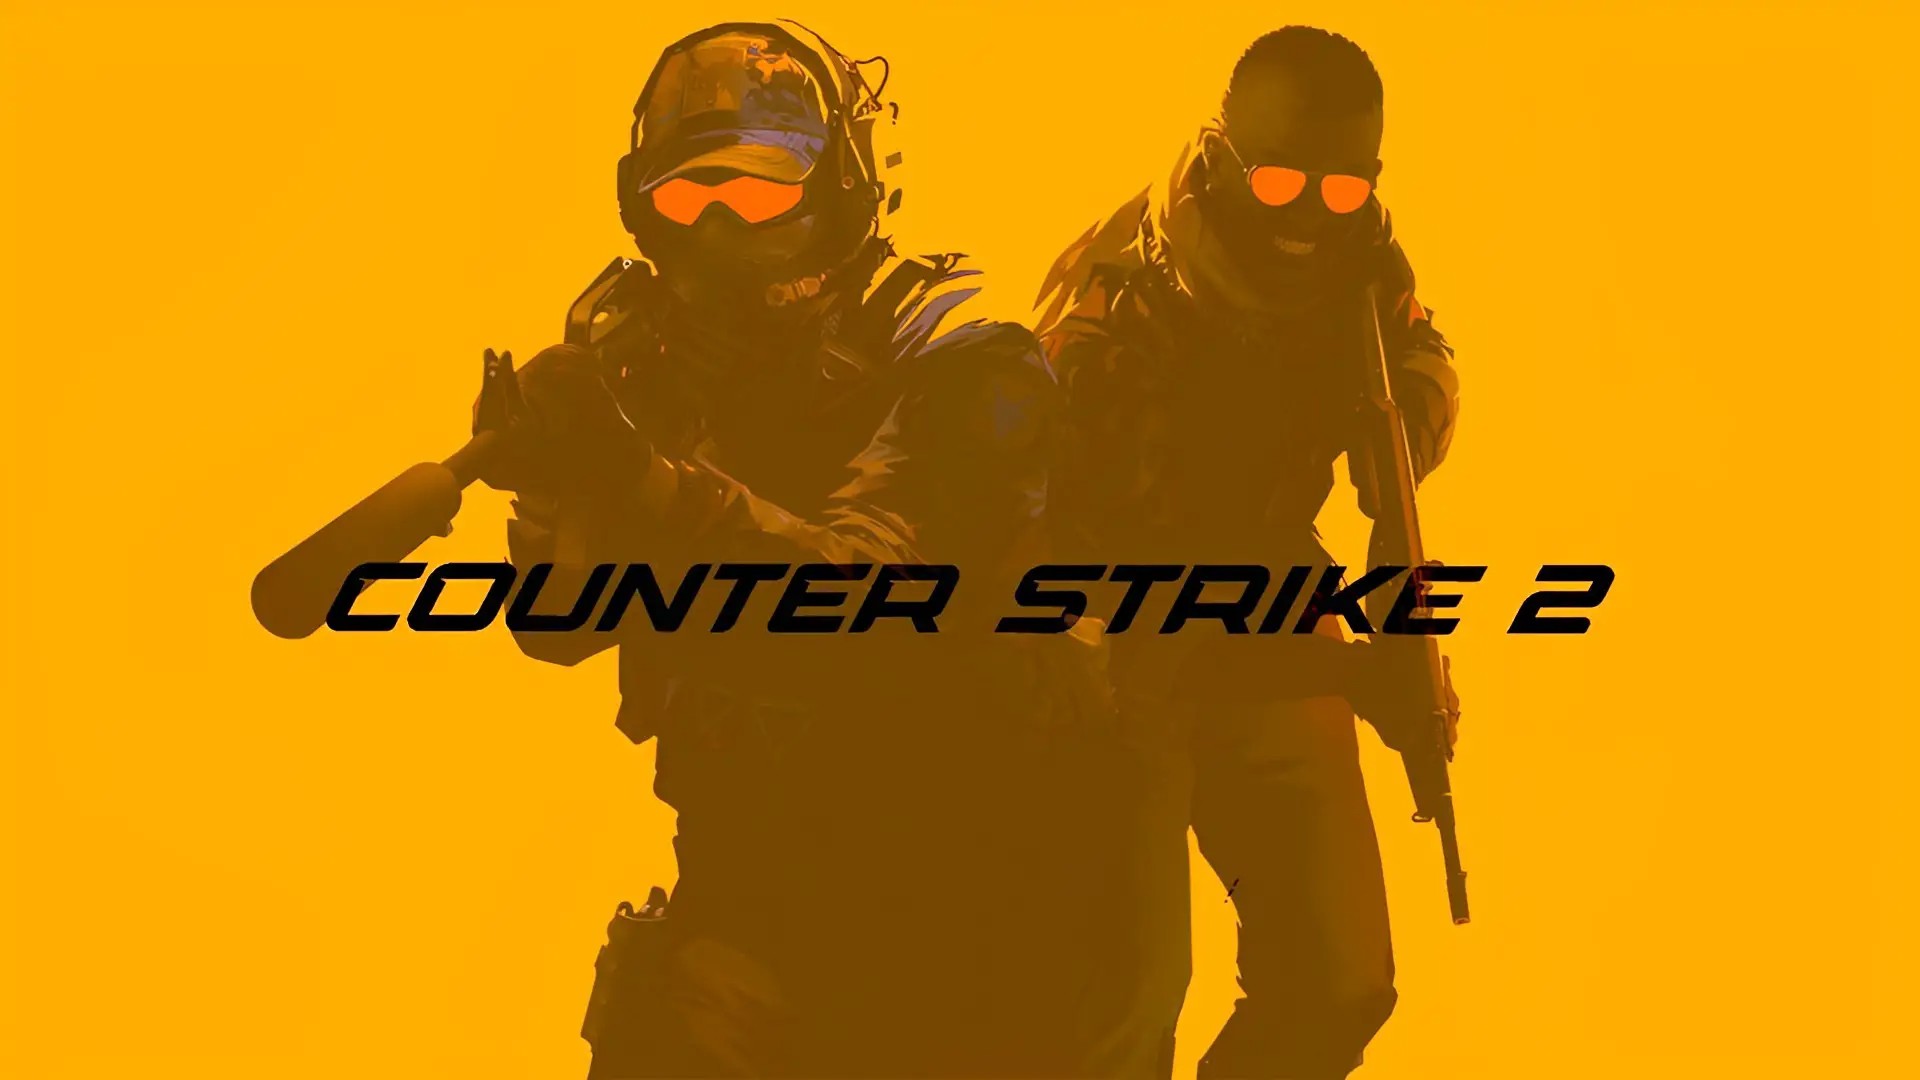 Valve обновила карты и улучшила оптимизацию в Counter-Strike 2